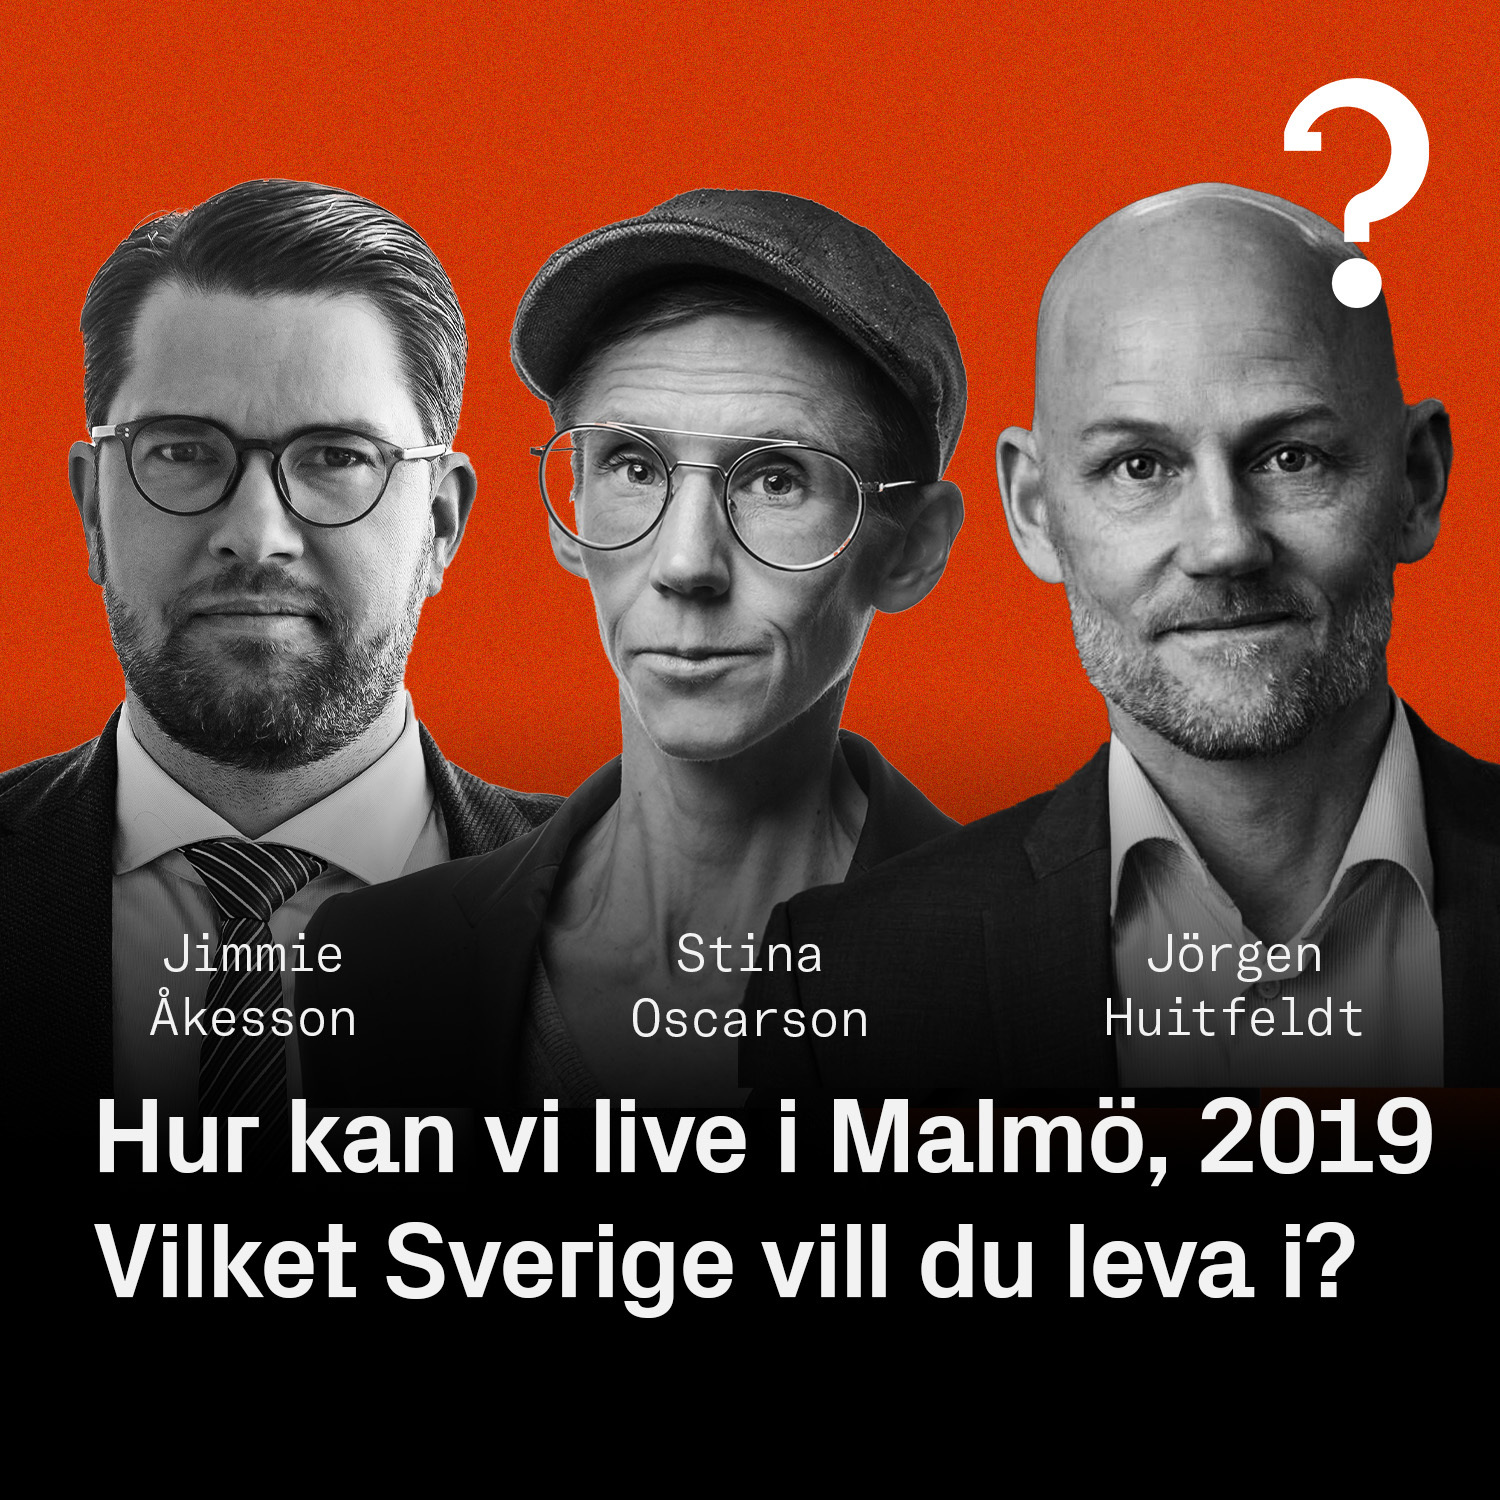 Jimmie Åkesson, Stina Oscarsson & Jörgen Huitfeldt – Vilket Sverige vill du leva i?